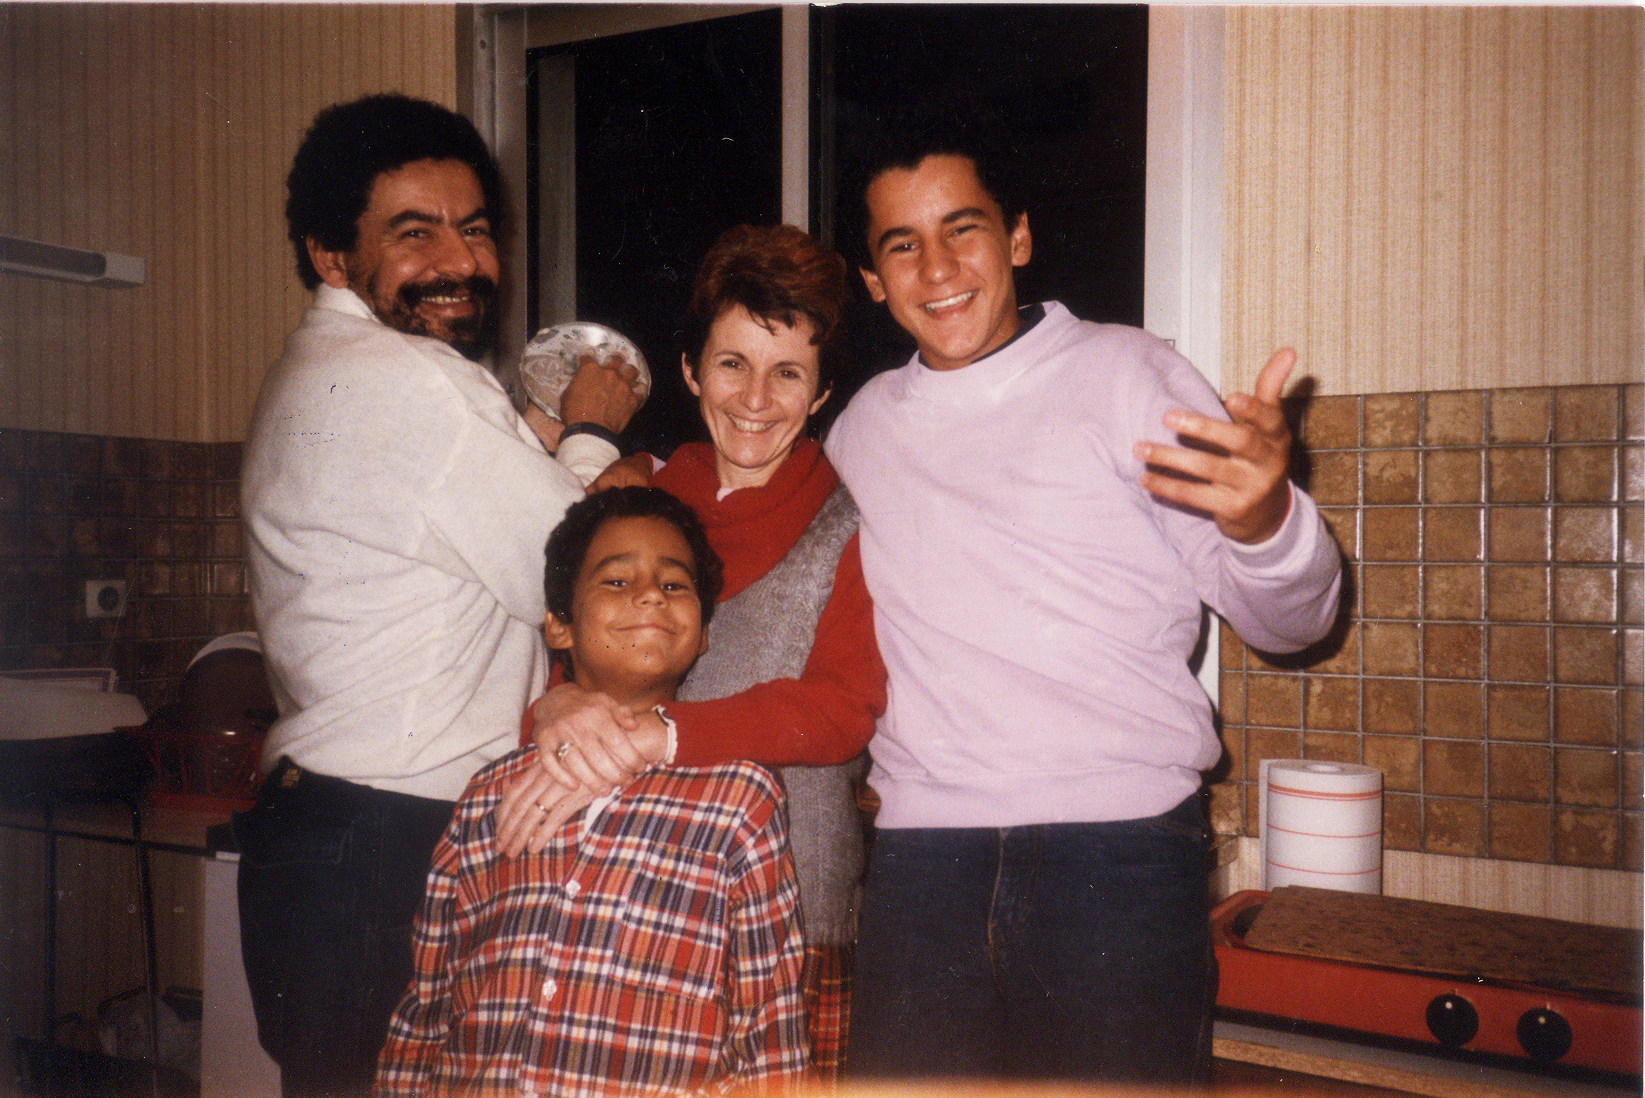 Temporada do pós-doutorado em Paris, com sua família: sua esposa, Yara, e dois de seus filhos, Daniel e Pedro. O terceiro, Ernesto, está atrás da câmera. Arquivo pessoal